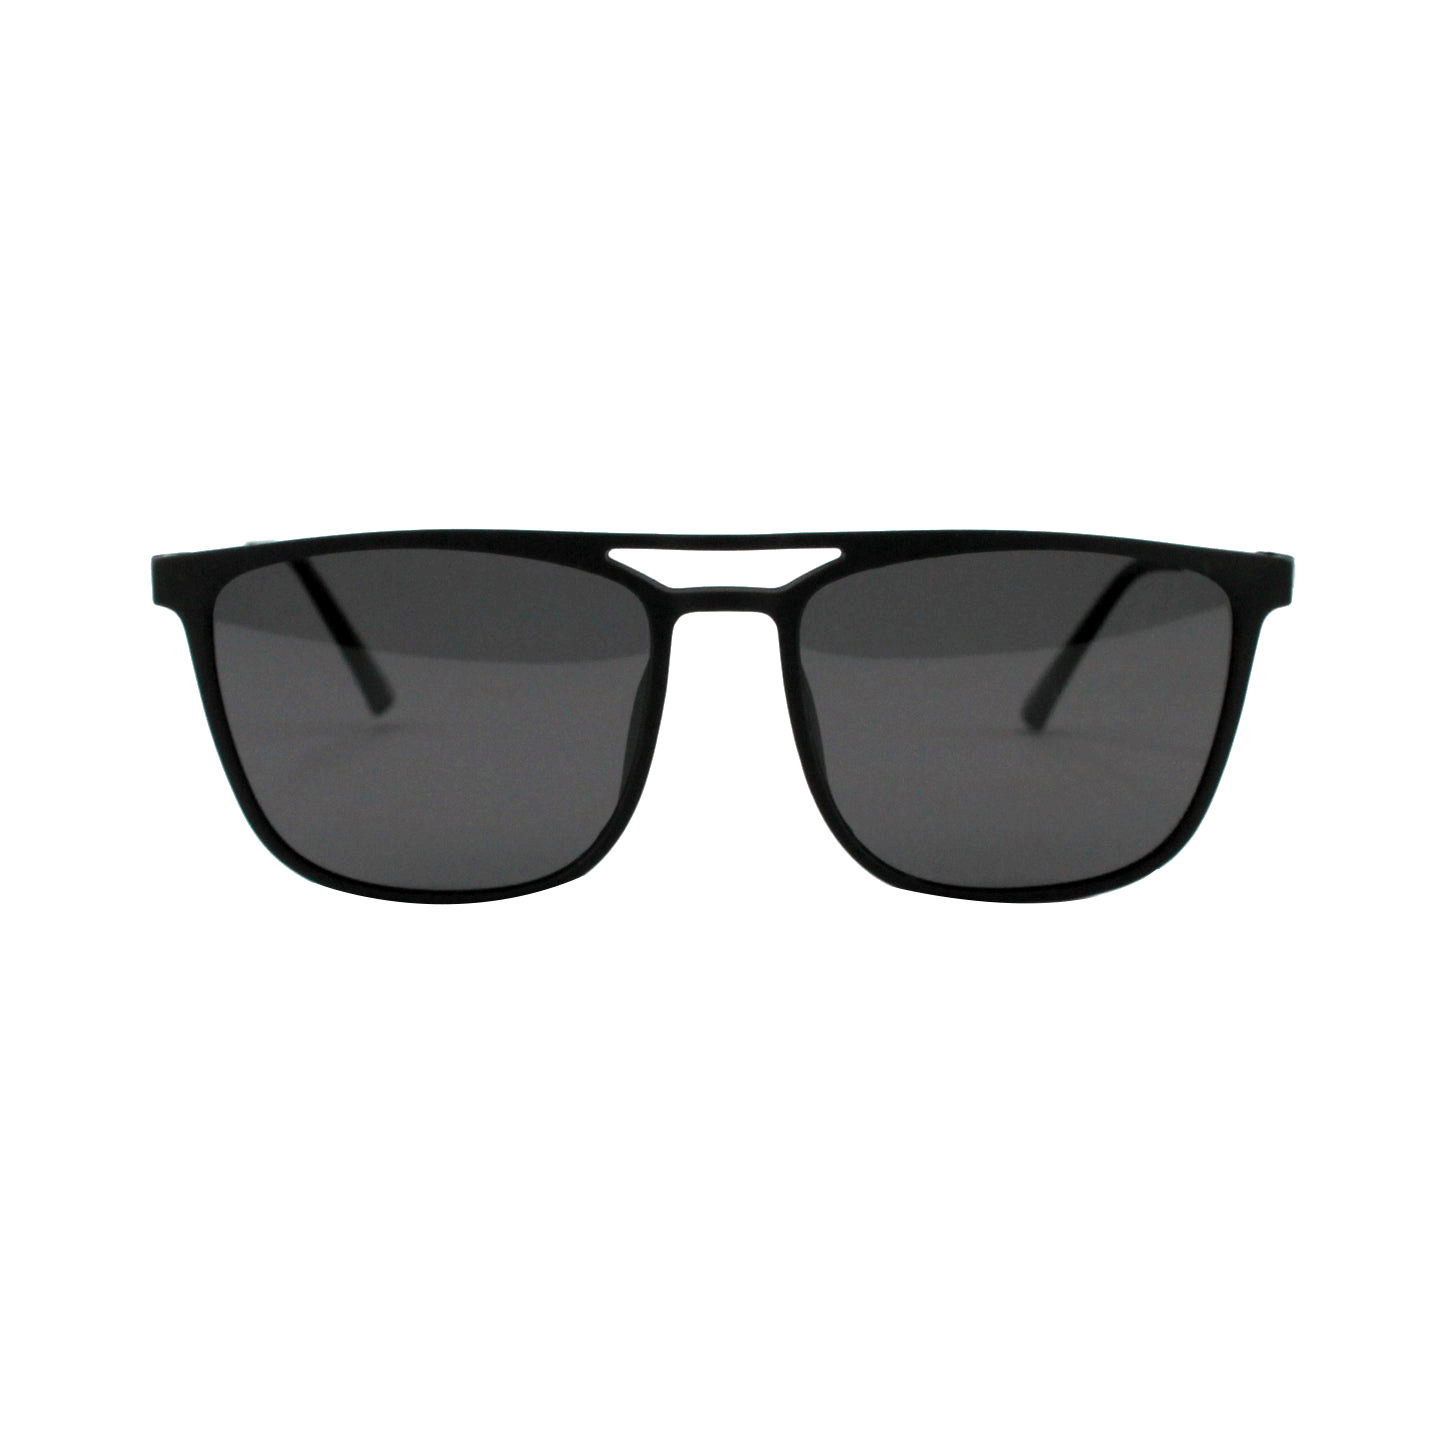 Shades X - Occhiali da sole polarizzati | Modello 8020